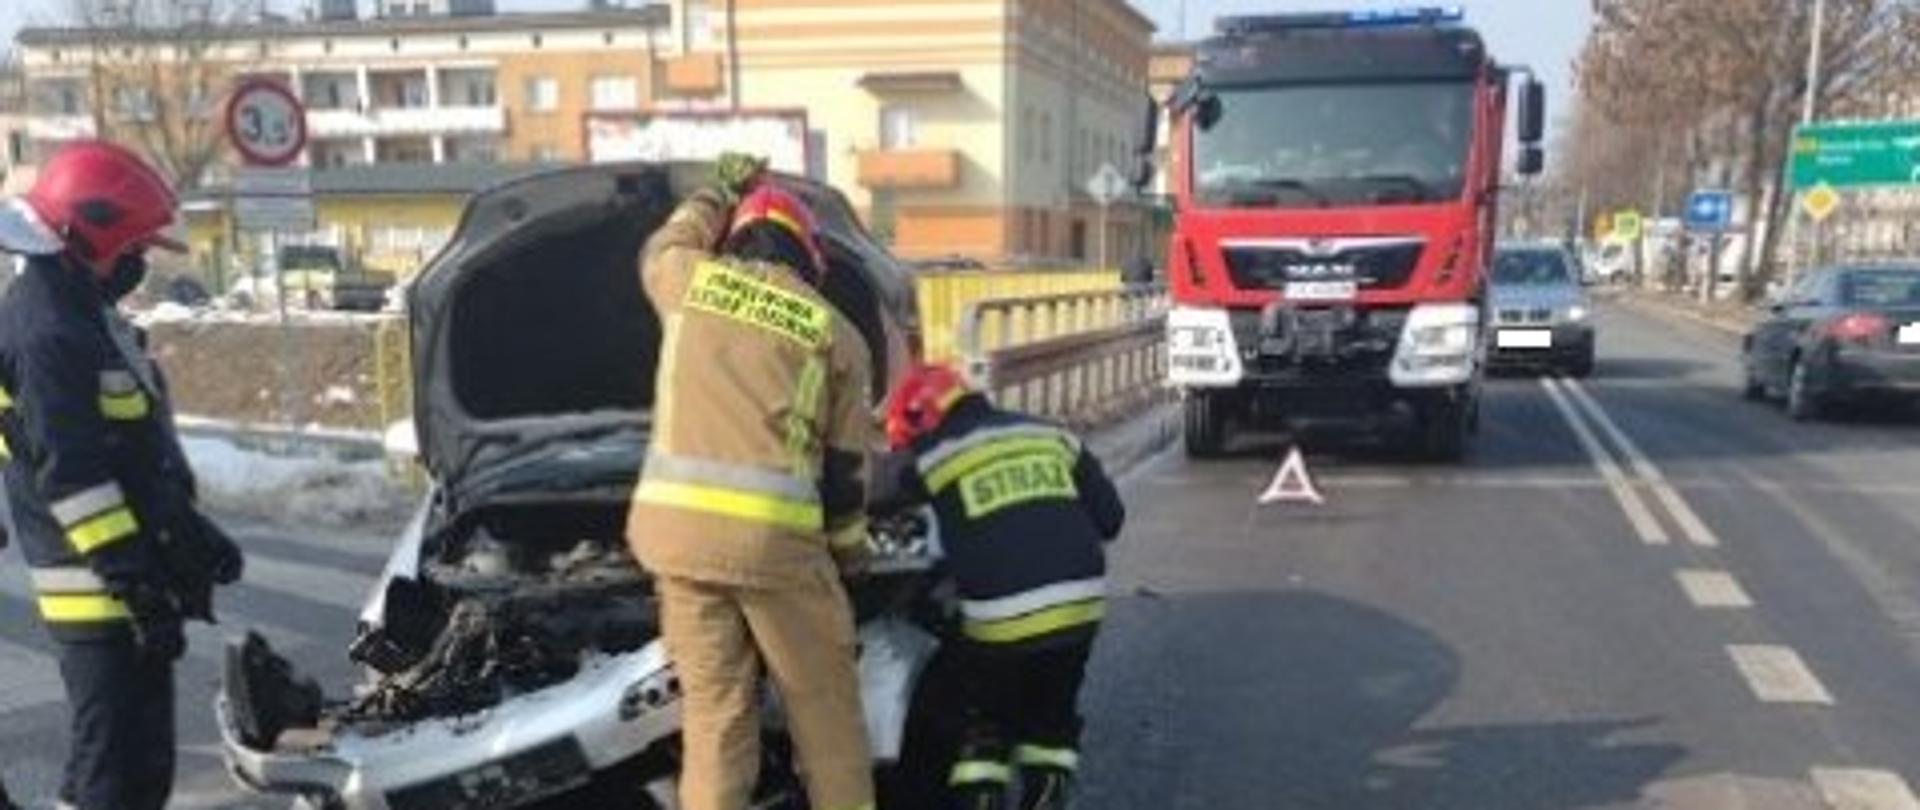 Rozbite auto przy ul. Sandomierskiej w Ostrowcu Św.